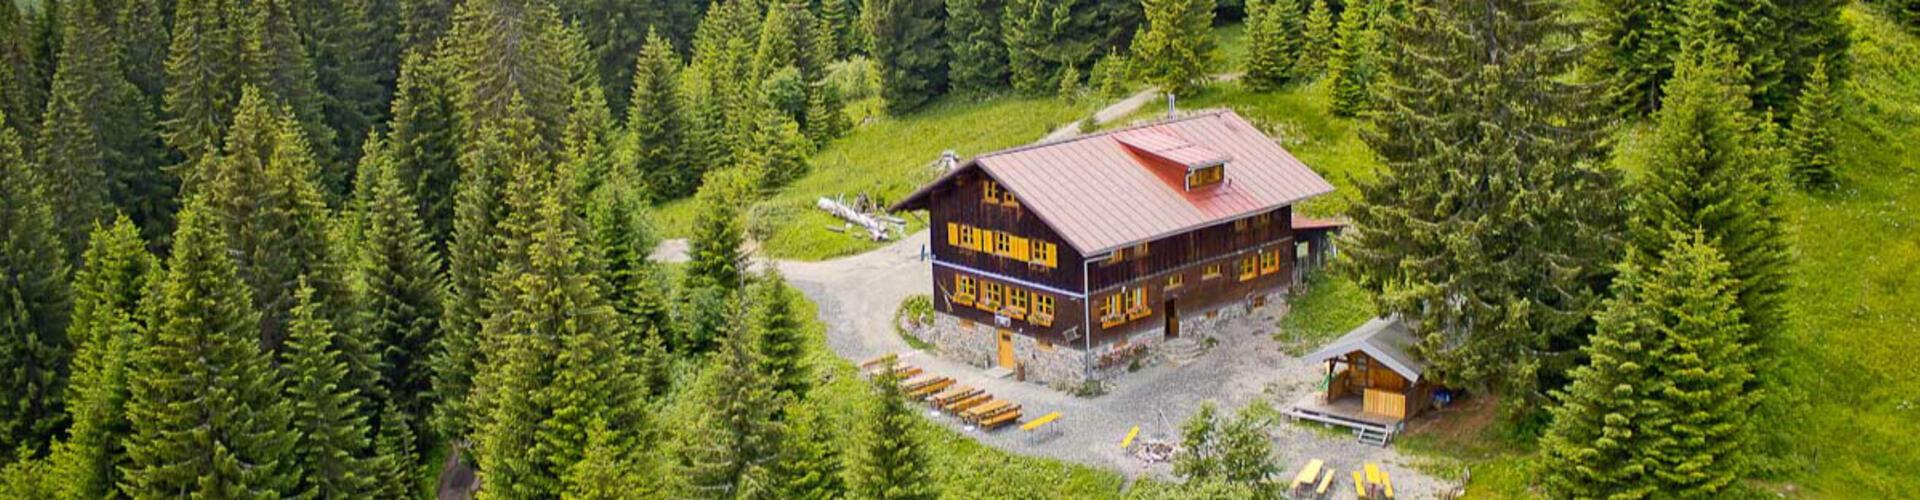 Wannenkopf Hütte cover